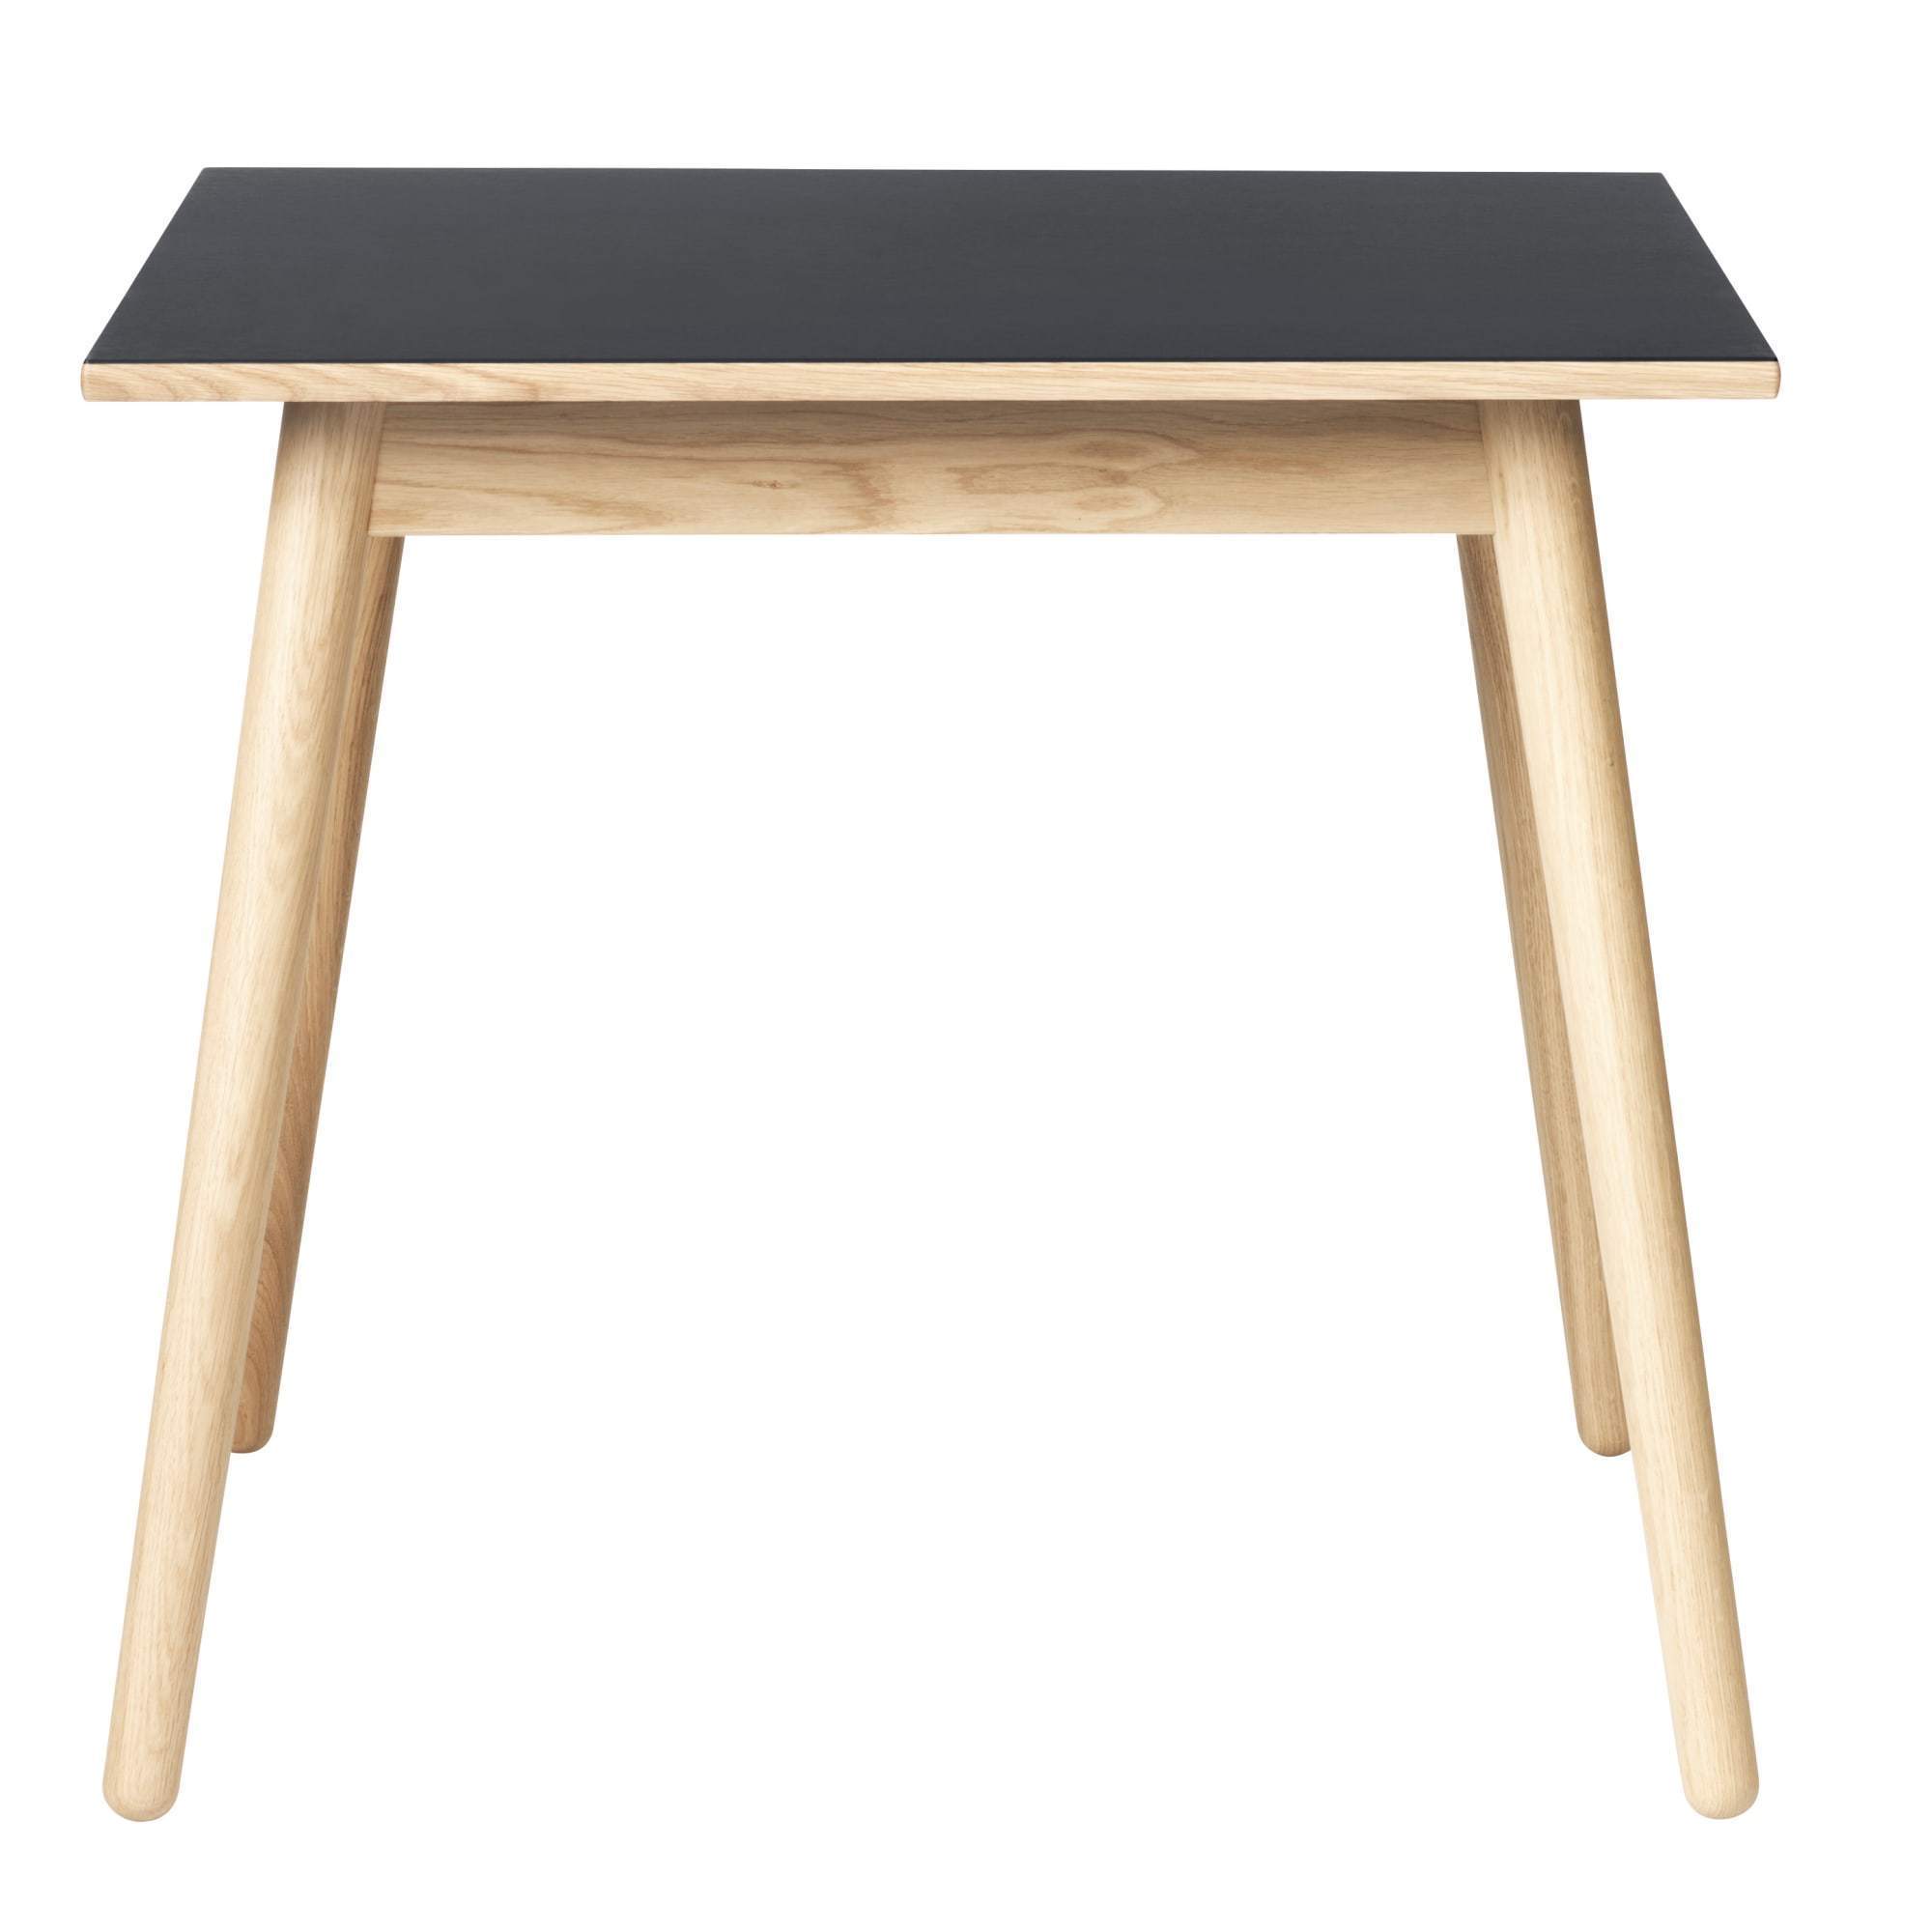 Fdb Møbler C35 matbord ek, mörkgrå linoleum bordsskiva, 82x82cm